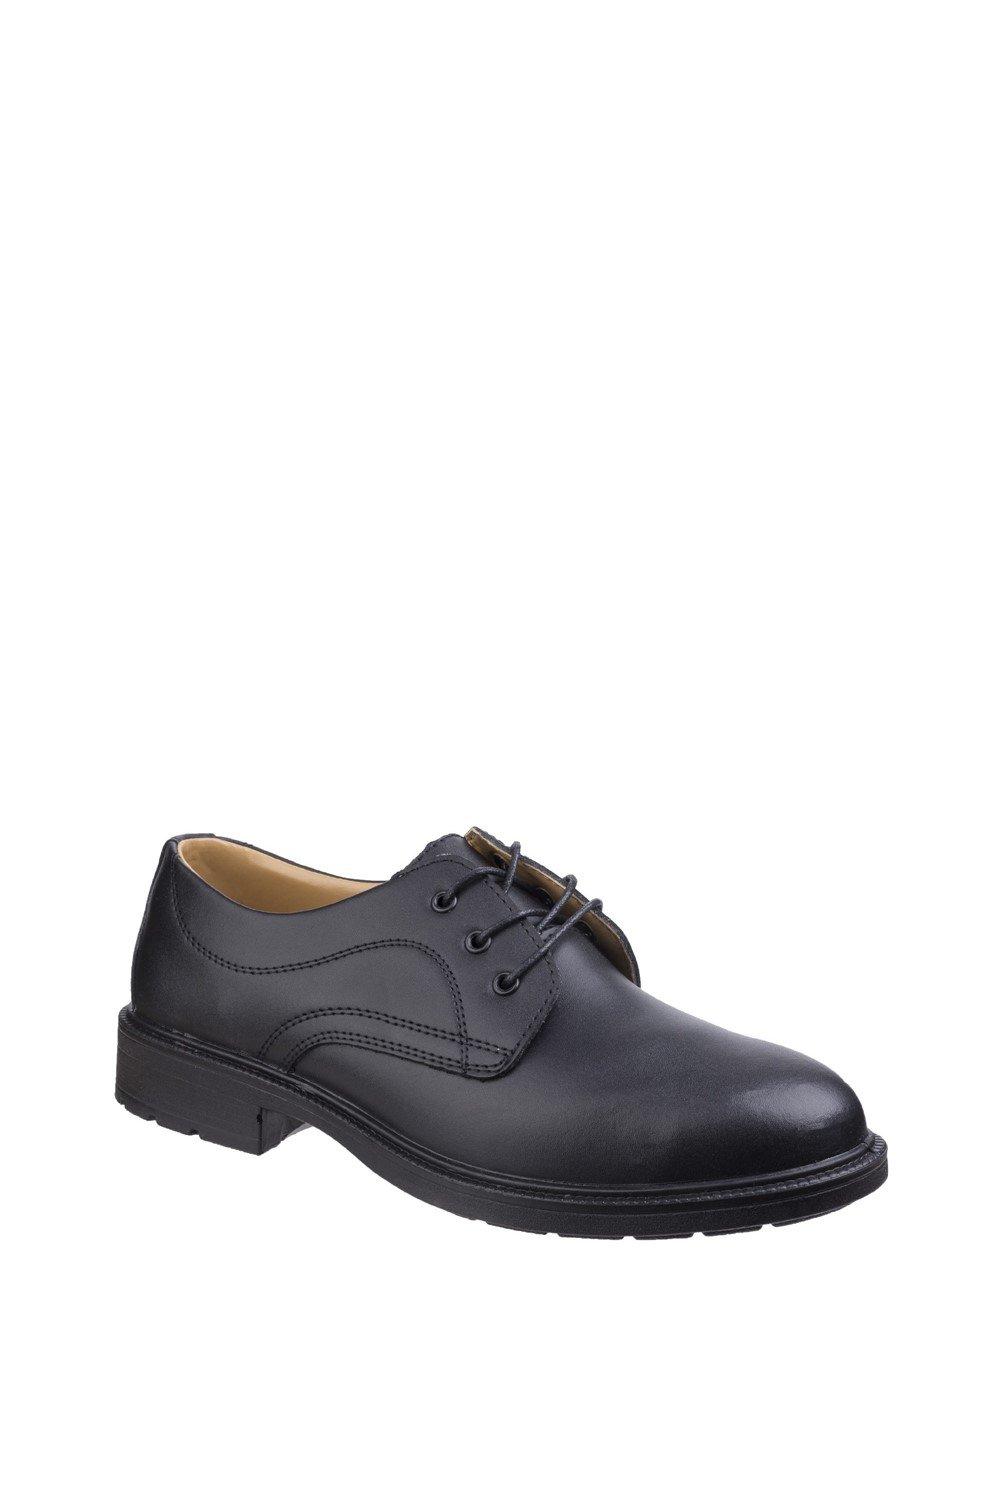 Защитная обувь 'FS45' Amblers Safety, черный формальная классическая обувь silwood удобная и прочная модная обувь thomas crick черный